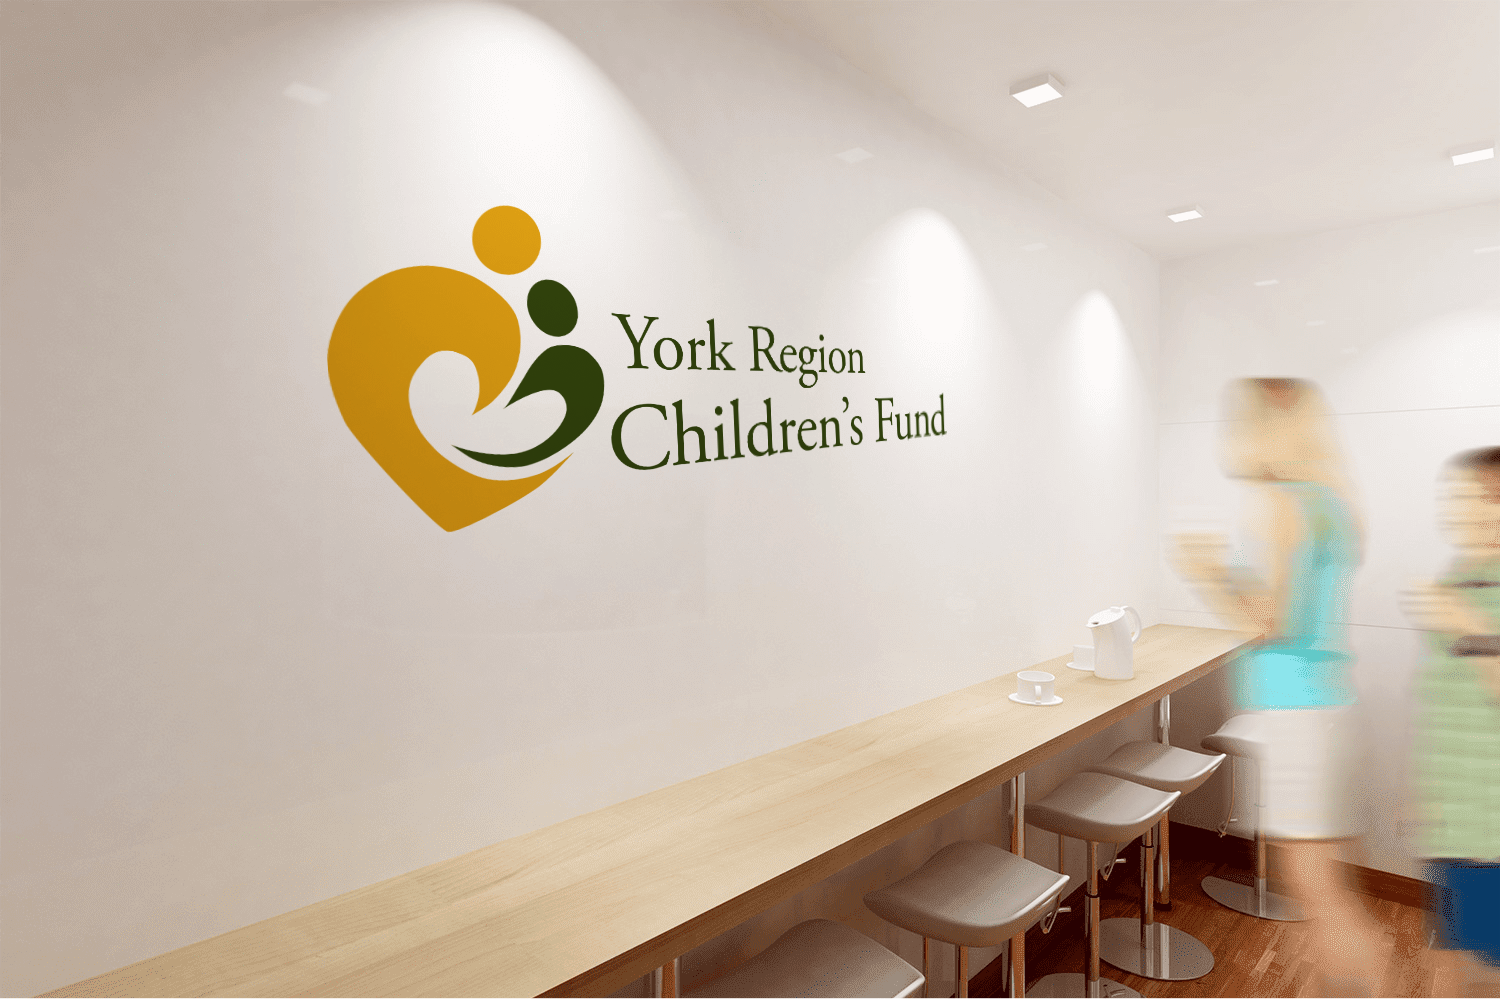 York Region Children’s Fund